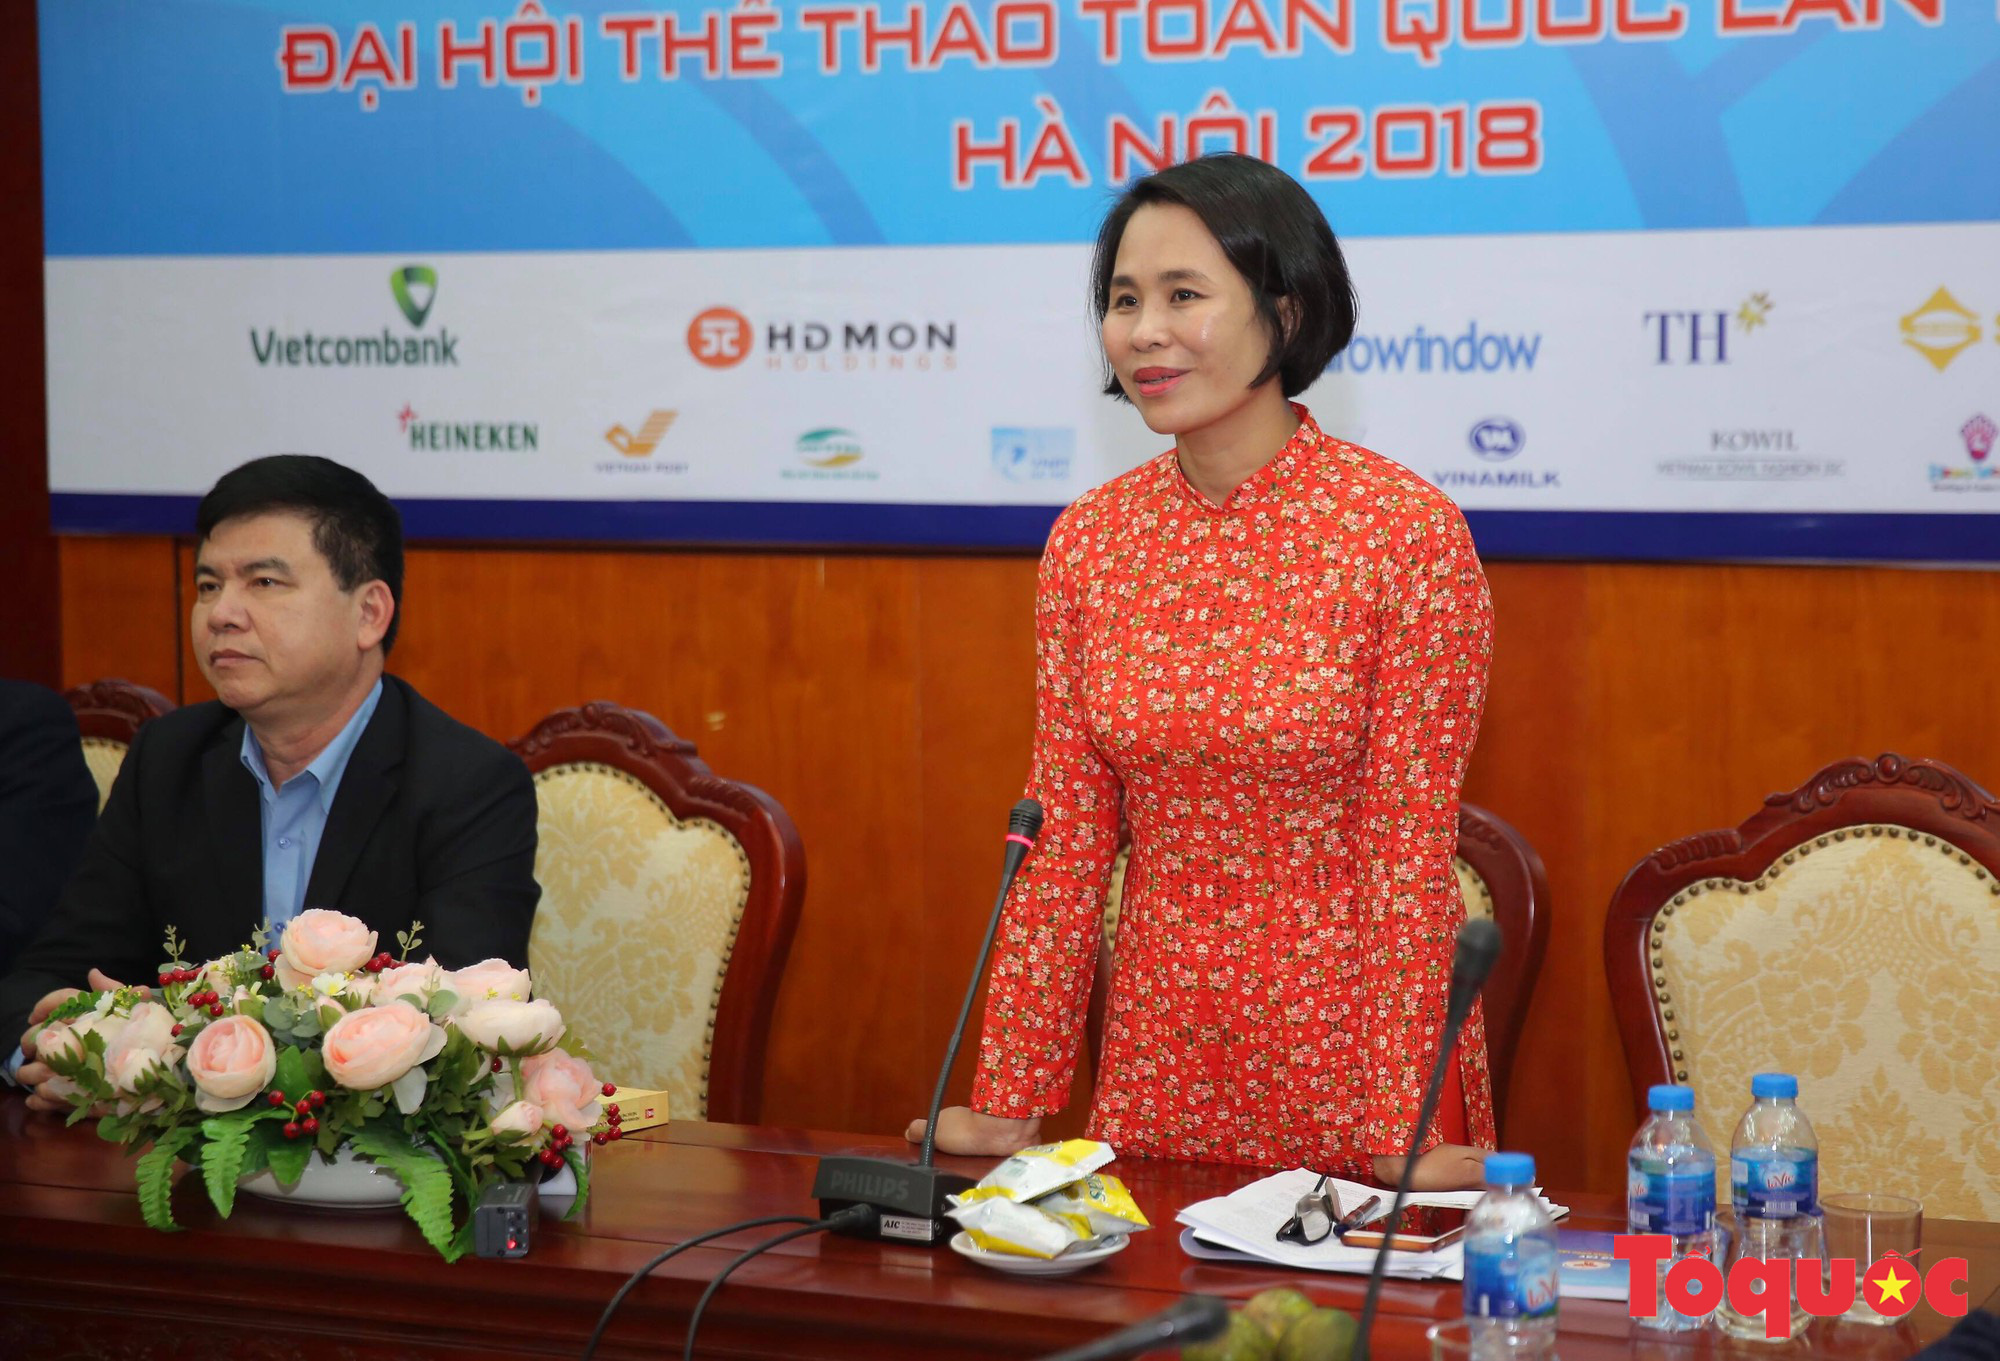 Ra mắt Trung tâm Báo chí Đại hội Thể thao toàn quốc 2018 và ra mắt cuốn sách lịch sử Thể dục Thể thao Việt Nam - Ảnh 5.